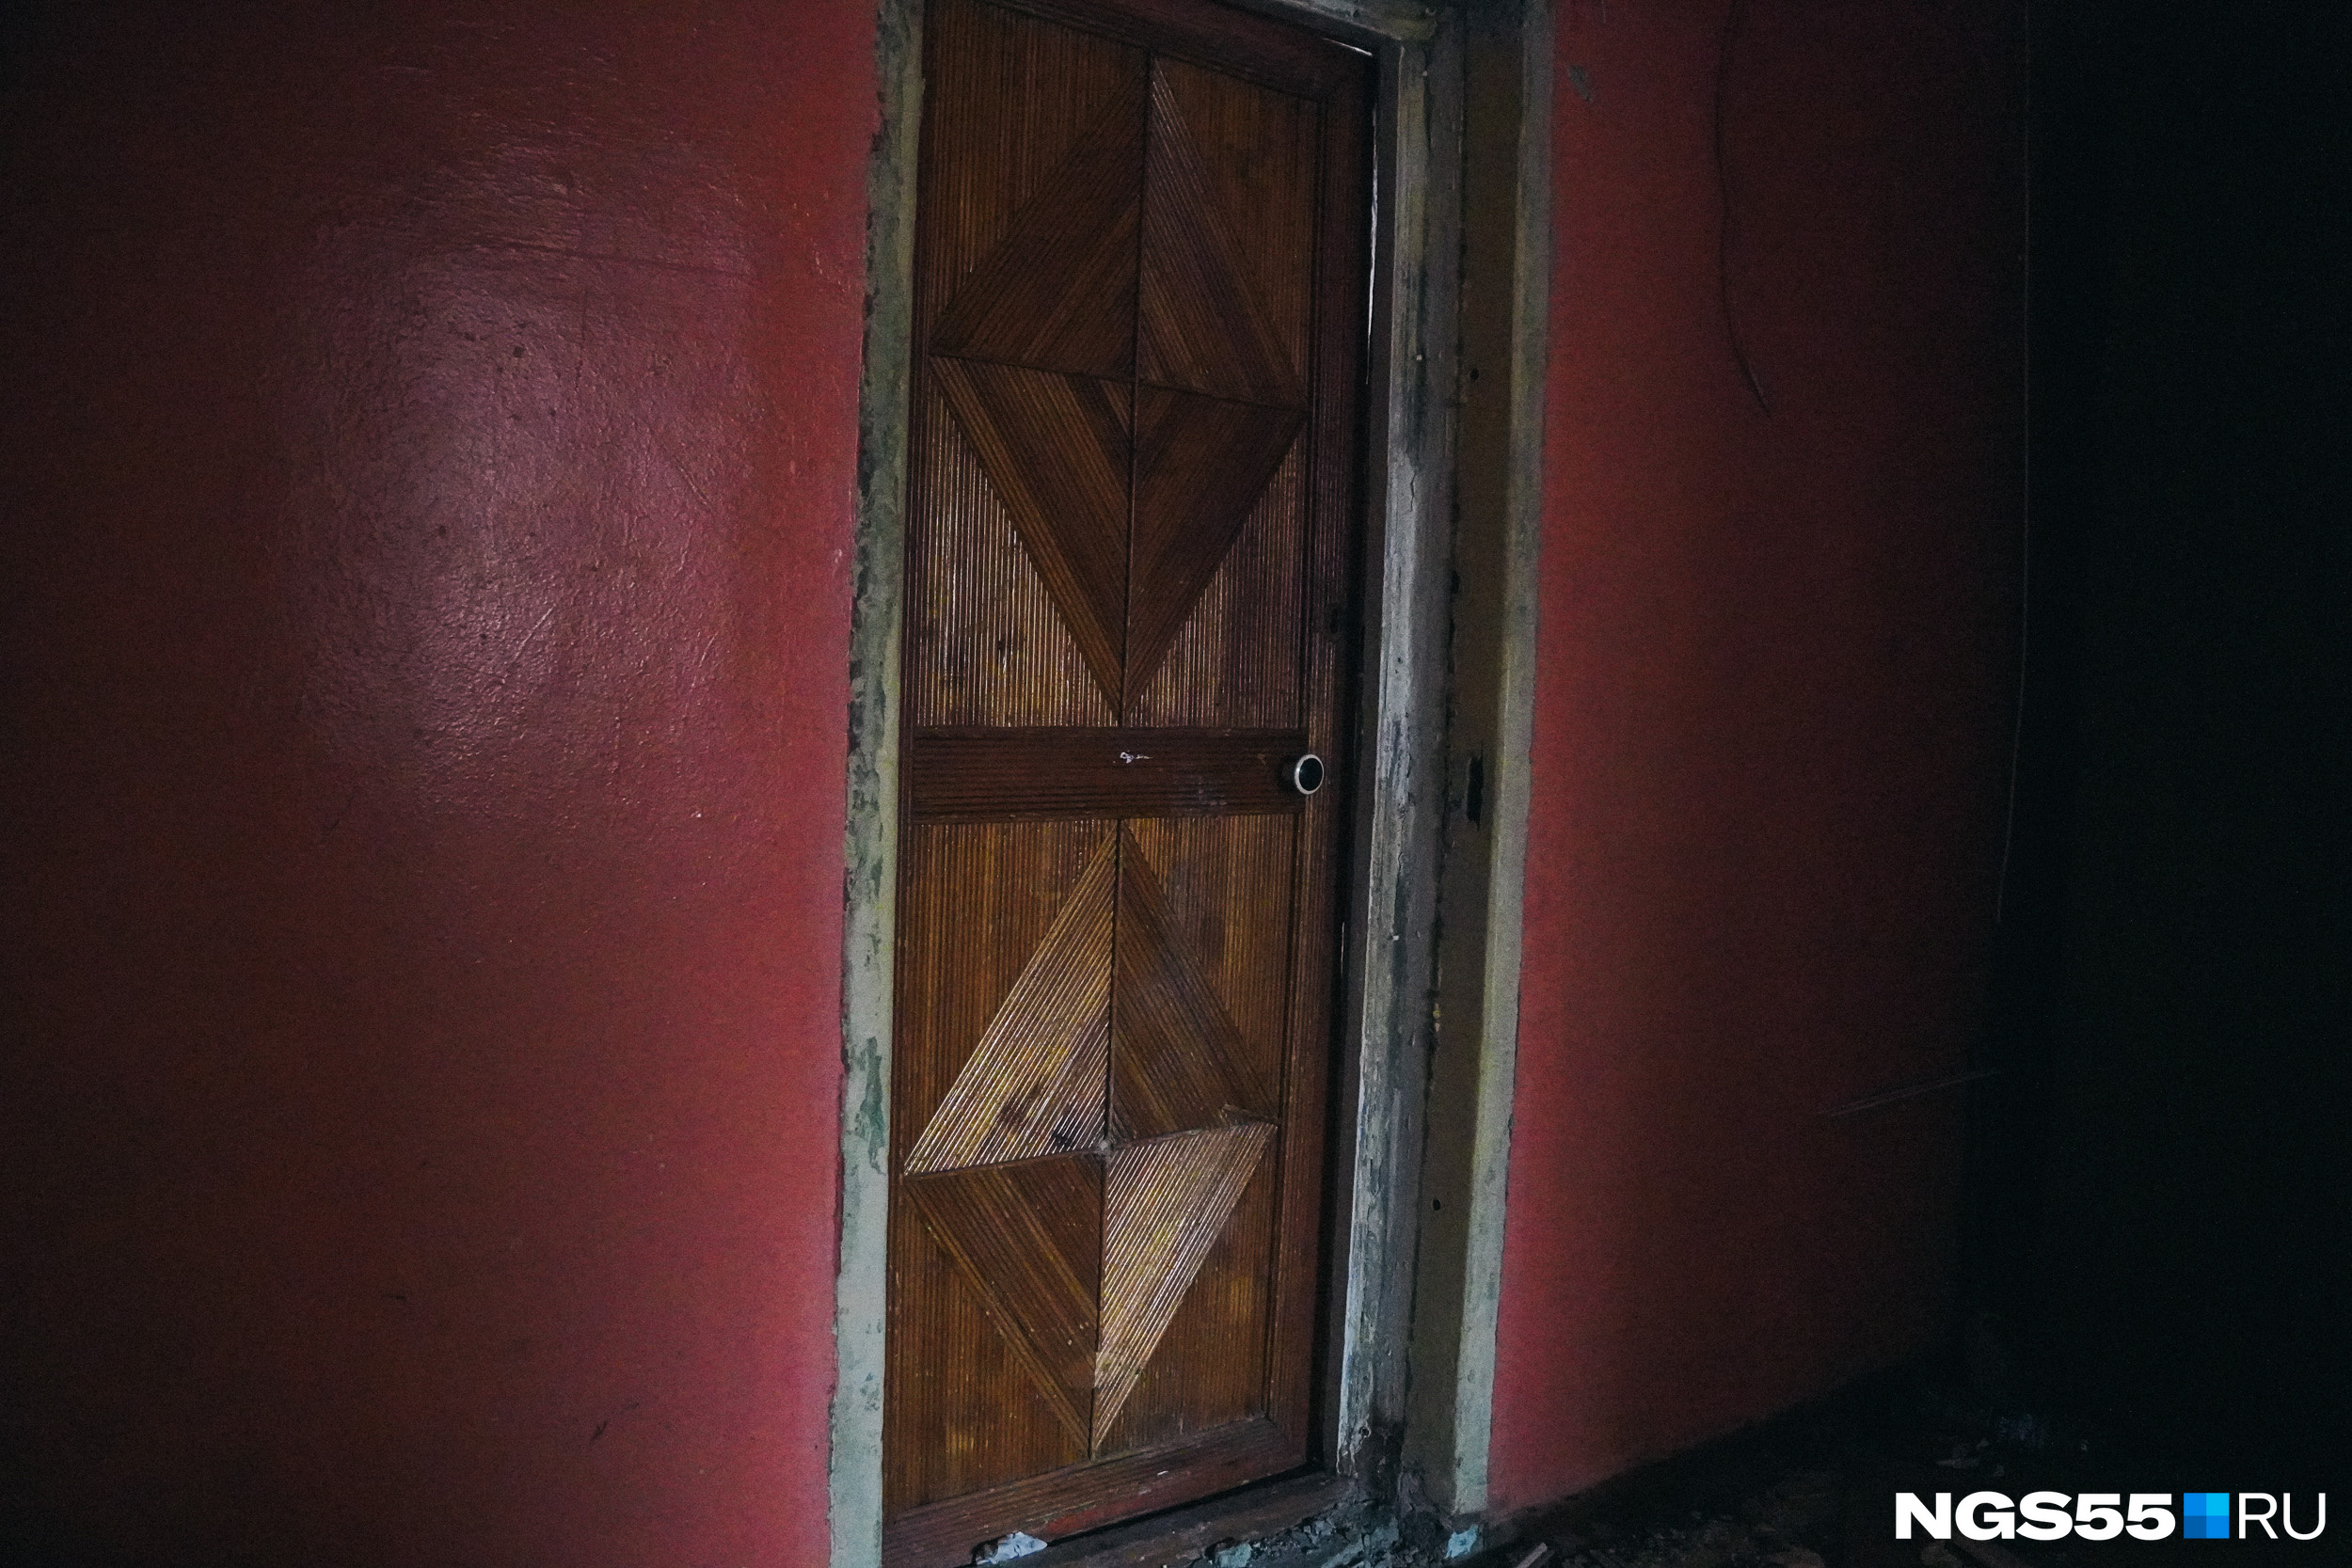 Снова поглядим на дом изнутри. Обычная деревянная дверь в квартиру. Раскроем секрет — мы находимся в общежитии